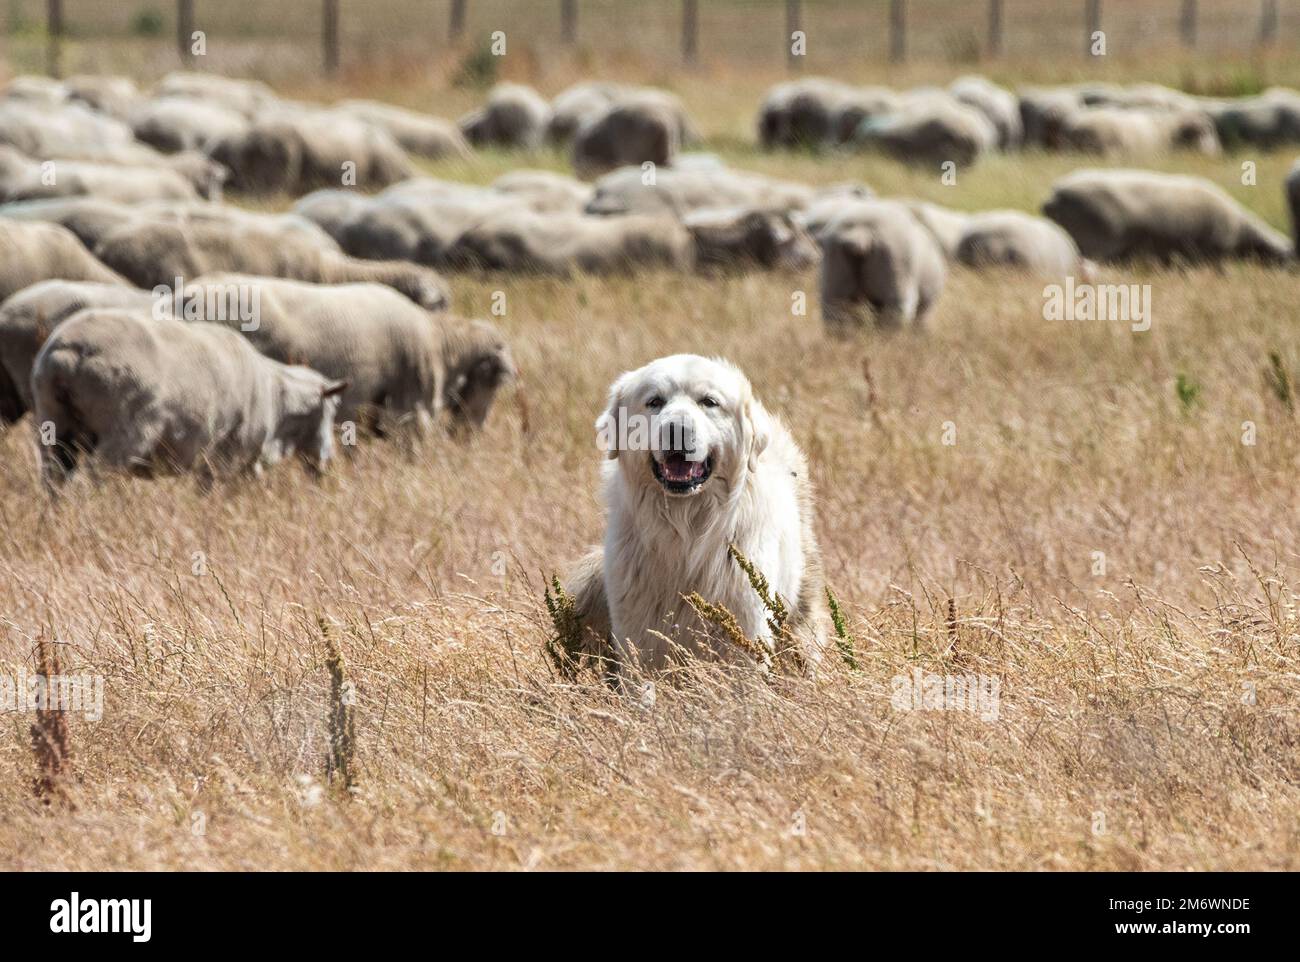 Ein Tierschutzhund beschützt eine Herde Schafe auf dem Luftwaffenstützpunkt Travis, Kalifornien, 6. Mai 2022. Diese Hunde werden das ganze Jahr über im Freien gezüchtet und schrecken Raubtiere ab. Die Herde von etwa 1.000 Schafen wurde freigelassen, um überwuchertes Unkraut zu beseitigen, ohne dass Herbizide und Maschinen erforderlich waren. Stockfoto